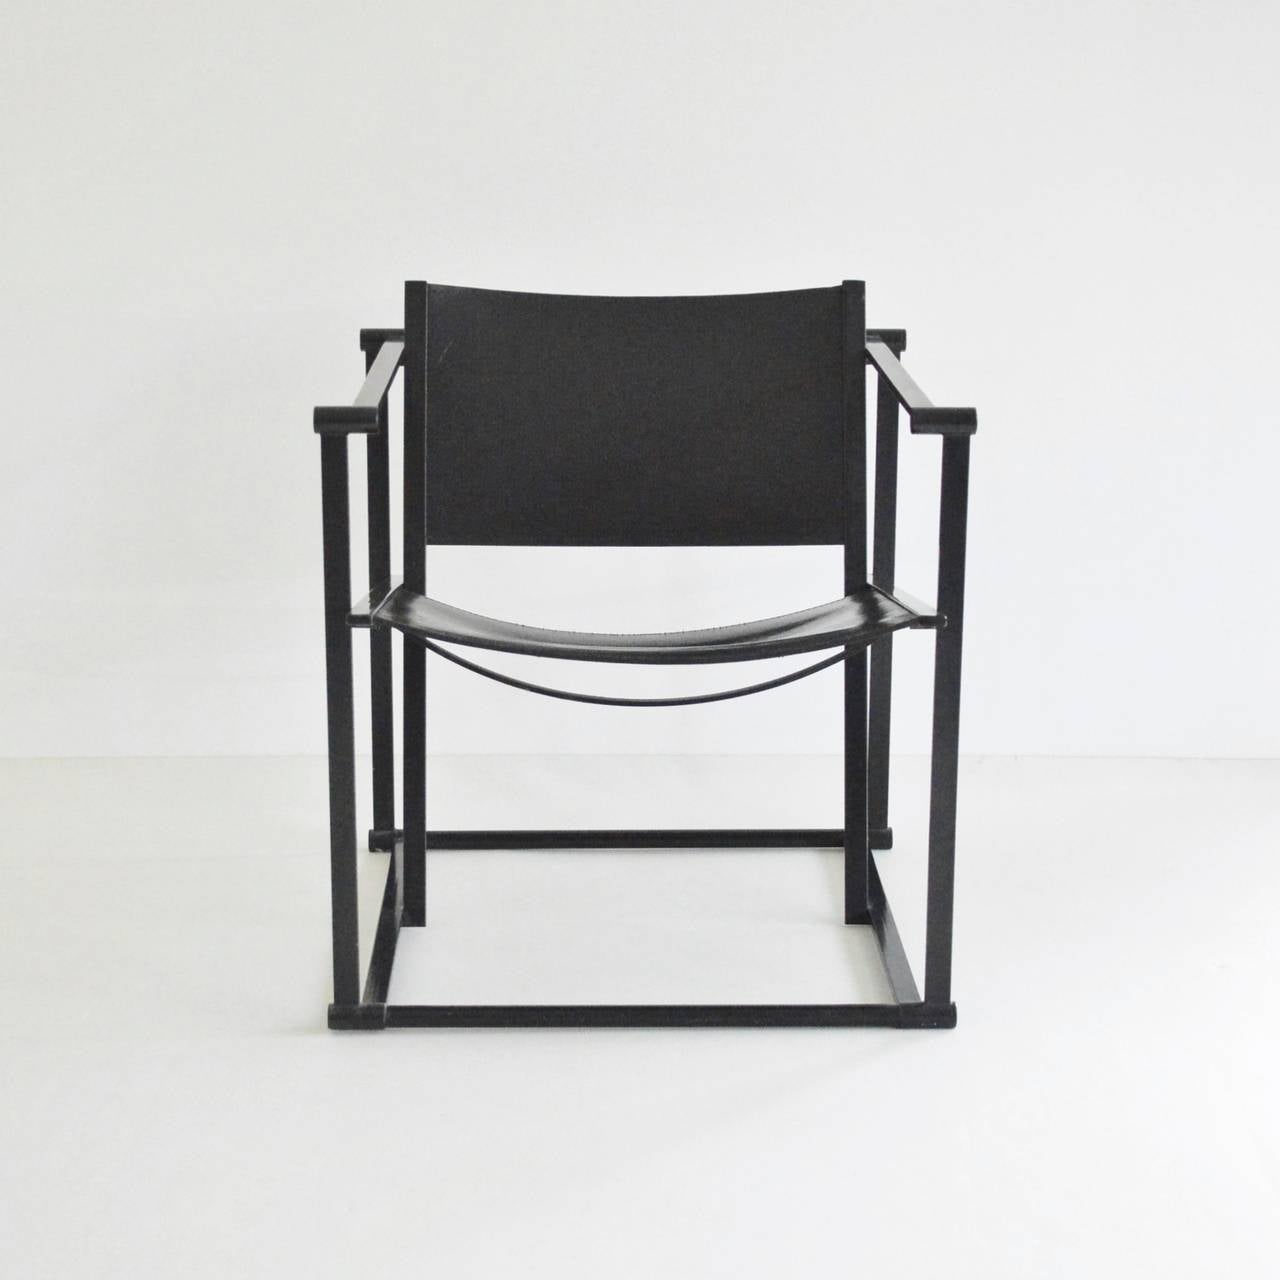 De Stijl Radboud Van Beekum FM62 Cube Chair in Black Leather